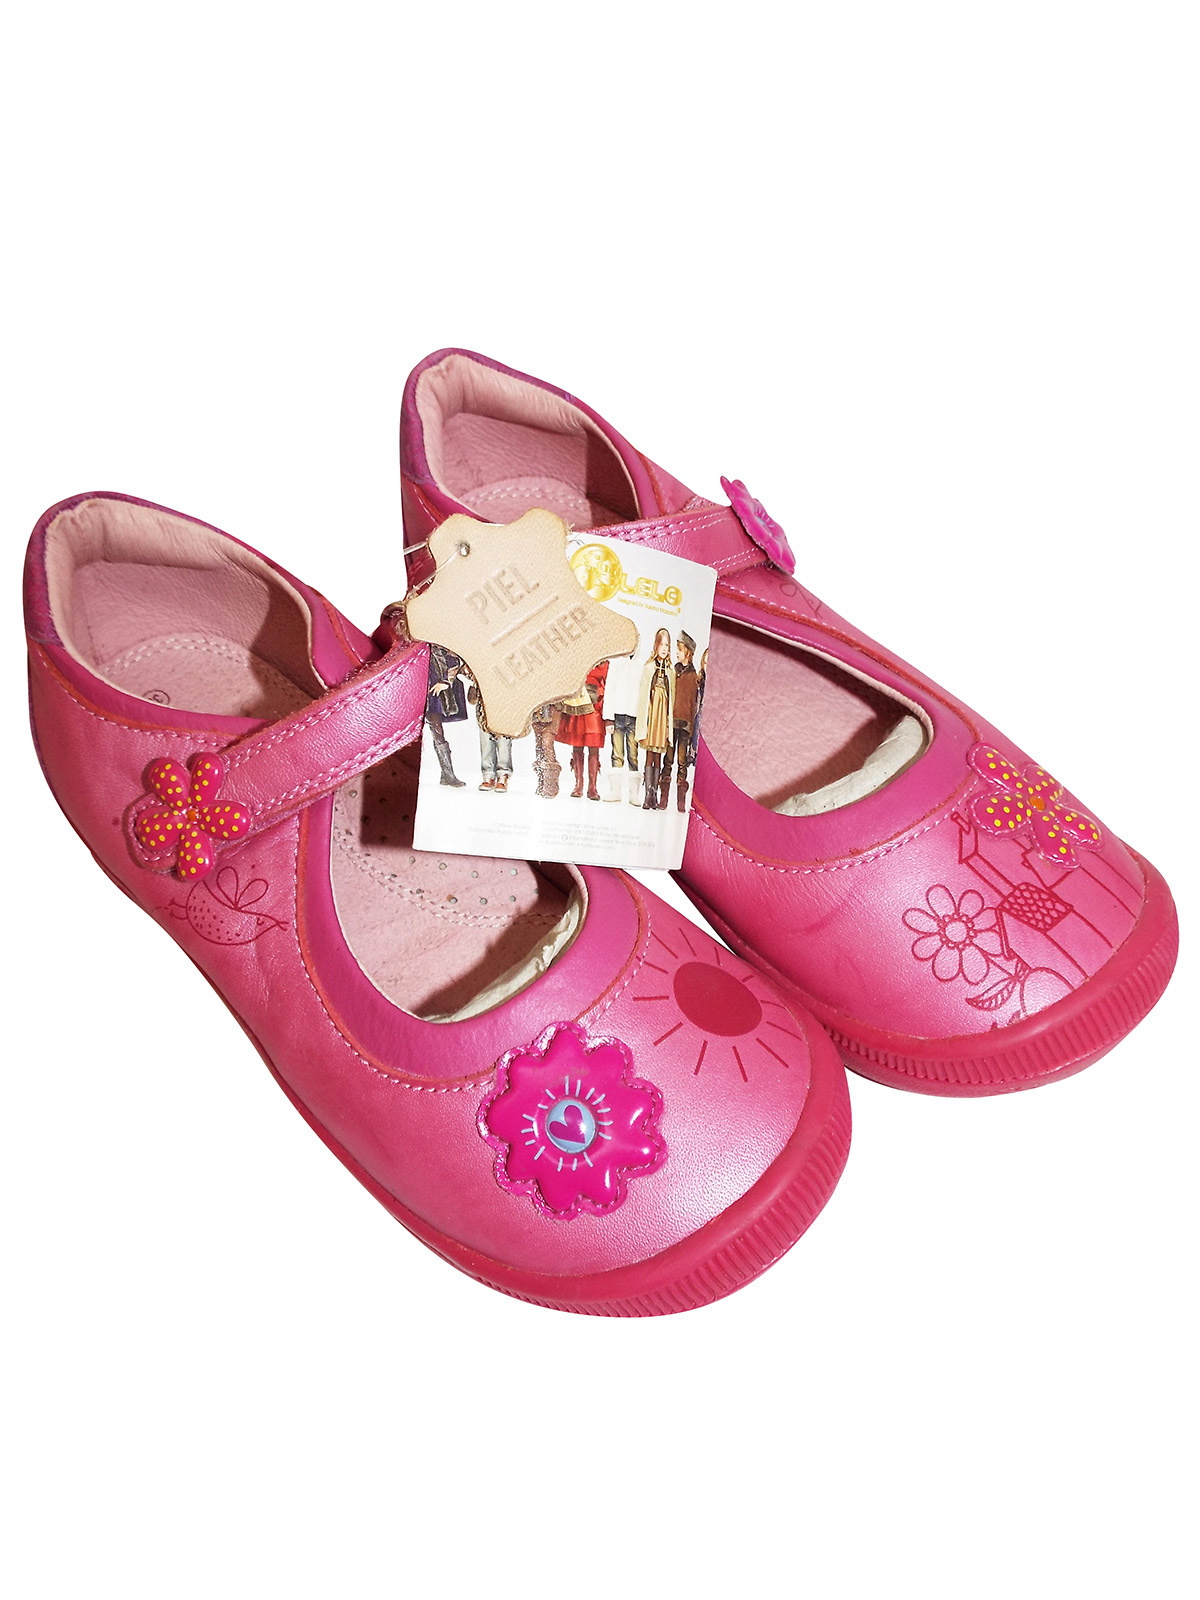 Lea Lelo - - Lea Lelo PINK Girls Floral Mary Jane Shoes - EU Size 29 to 30